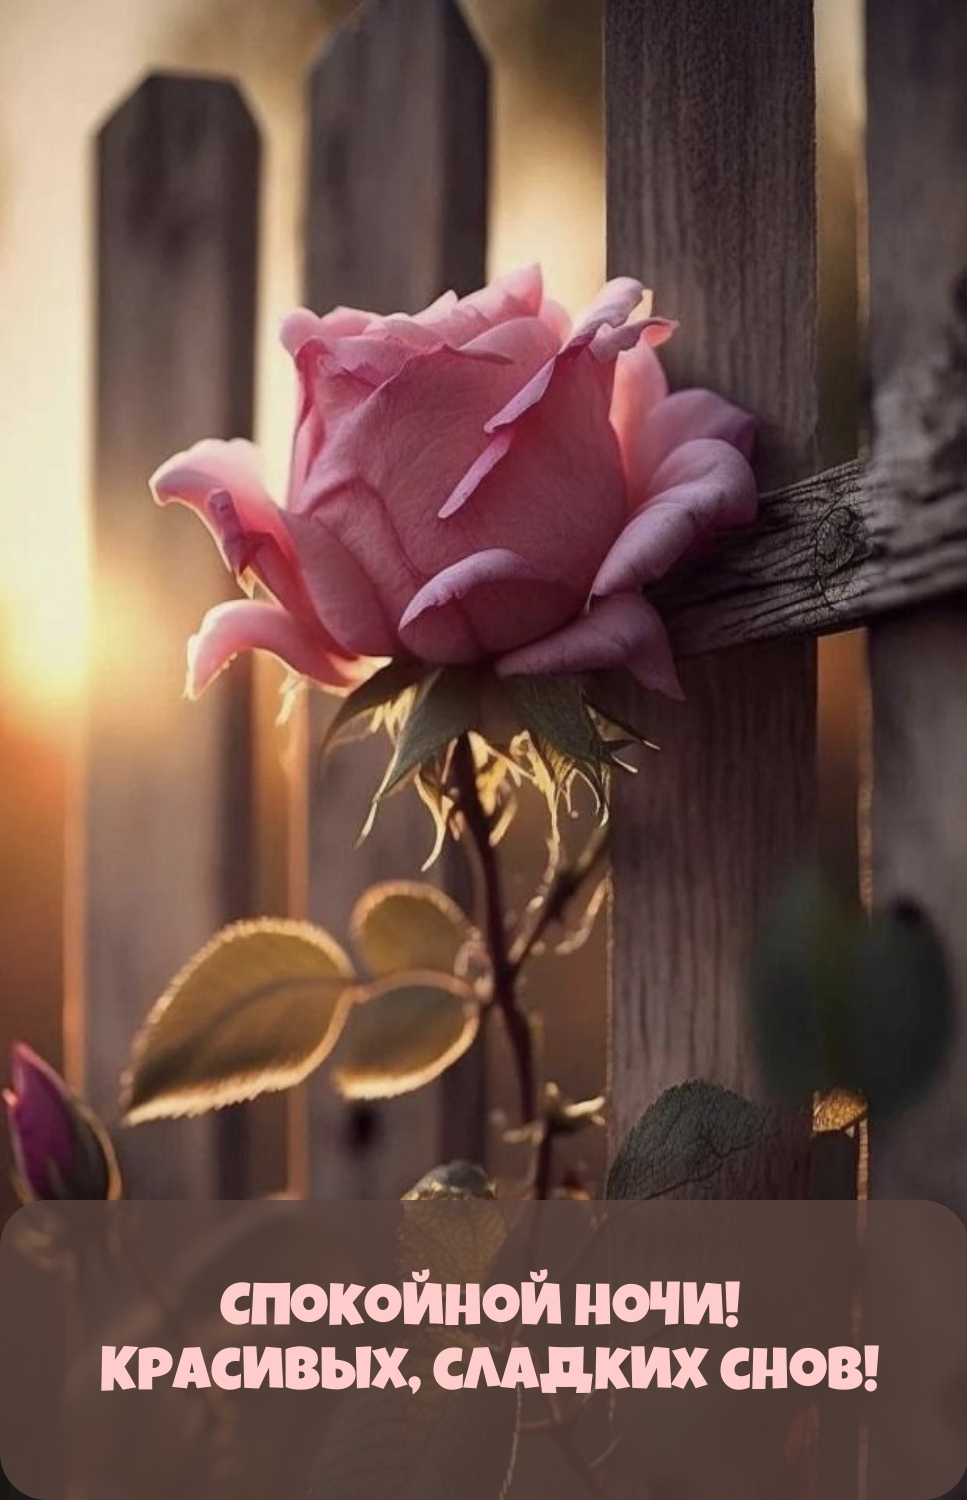 Красивые открытки спокойной ночи с цветами - 42 фото - смотреть онлайн